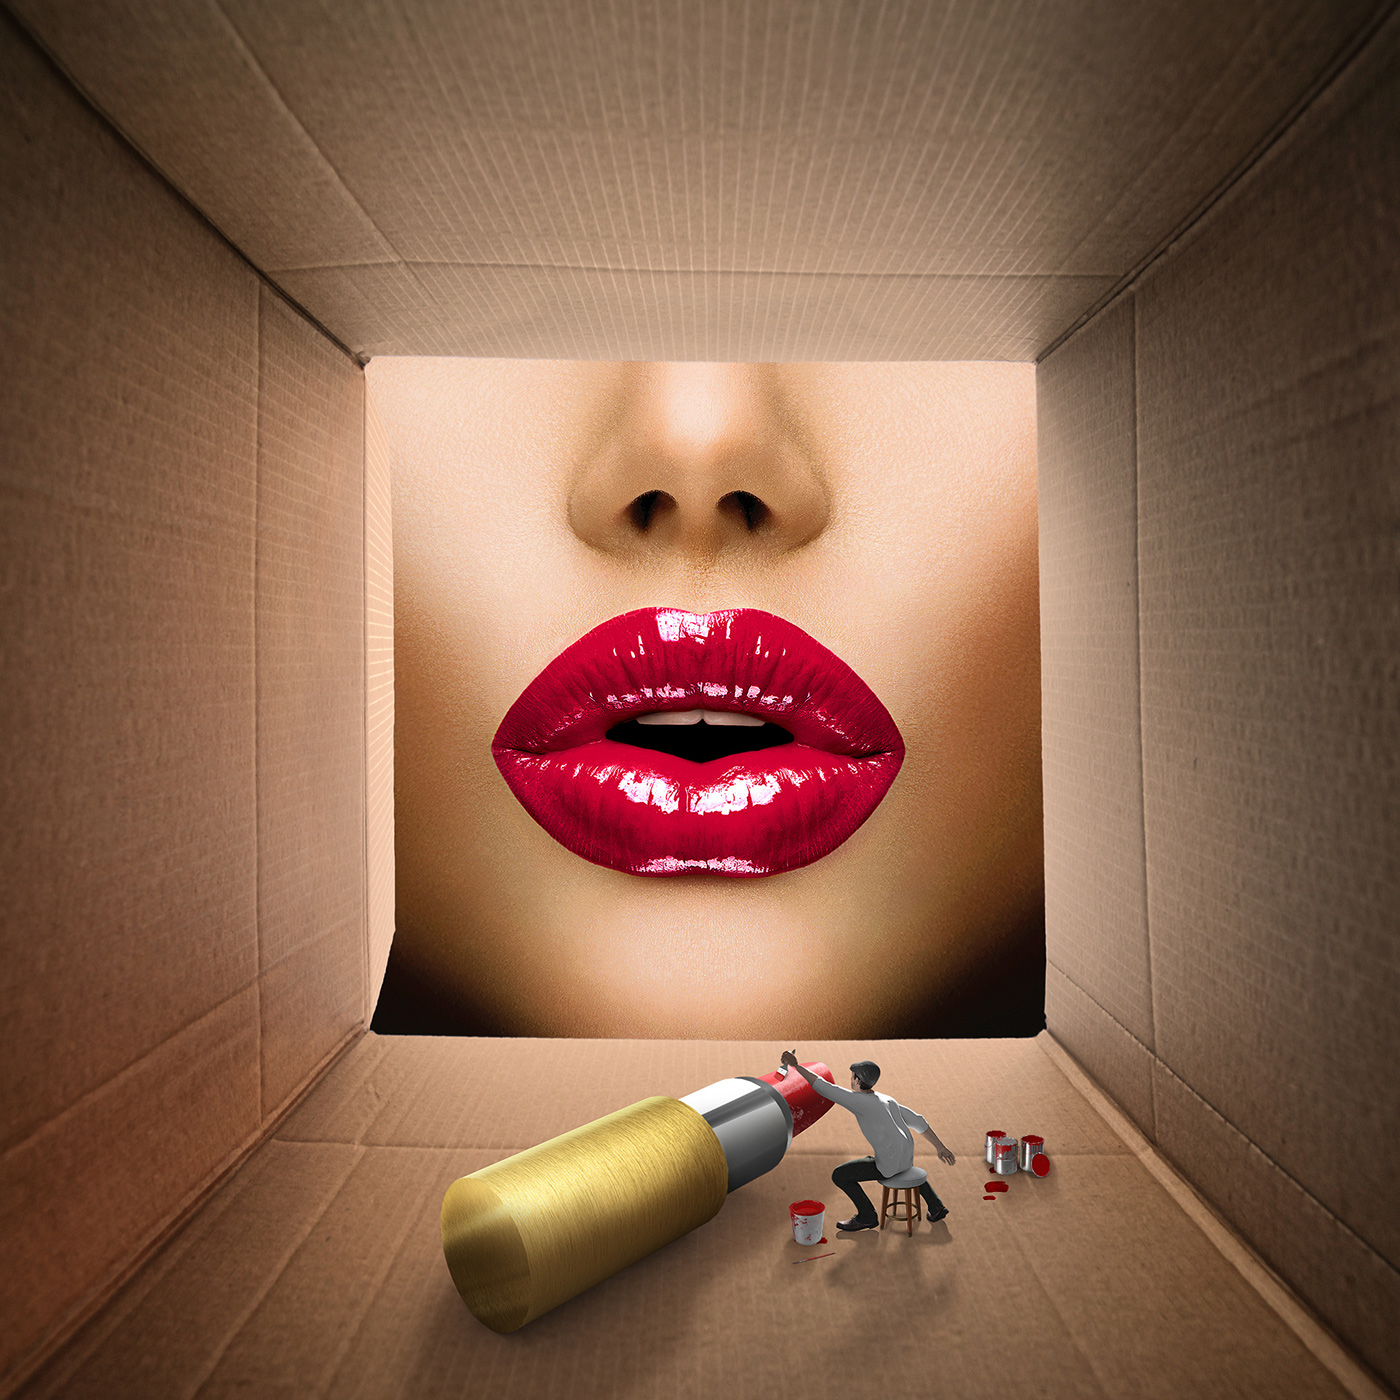 Aachen werbeagenturaachen lips Miniature composing Bildbearbeitung karton Retusche lipstick creative